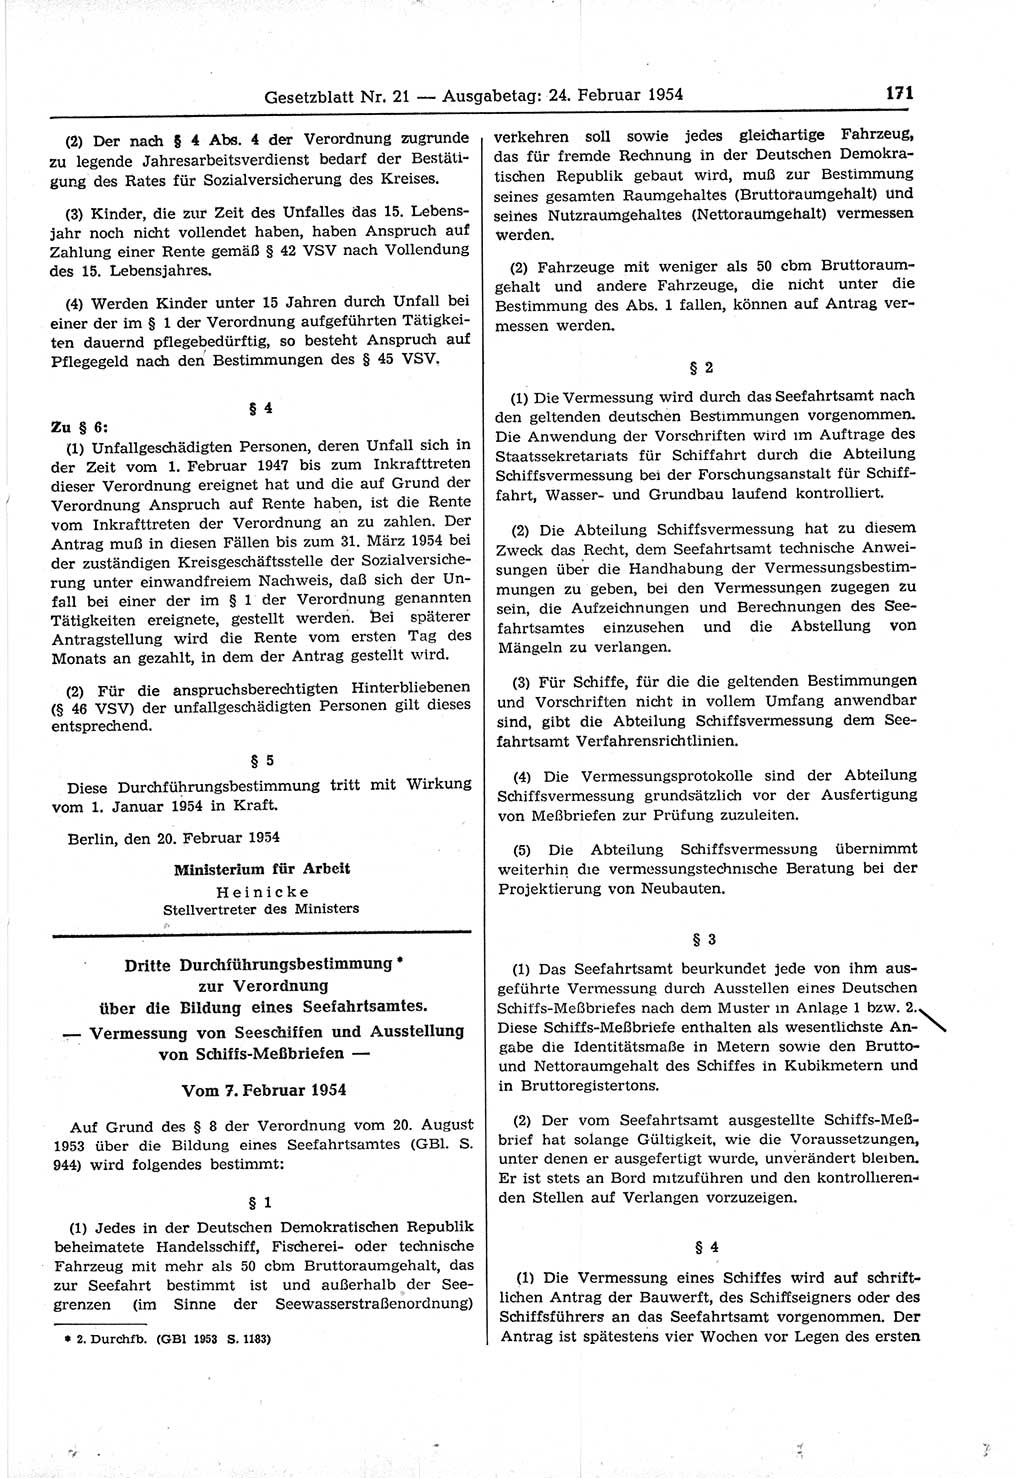 Gesetzblatt (GBl.) der Deutschen Demokratischen Republik (DDR) 1954, Seite 171 (GBl. DDR 1954, S. 171)